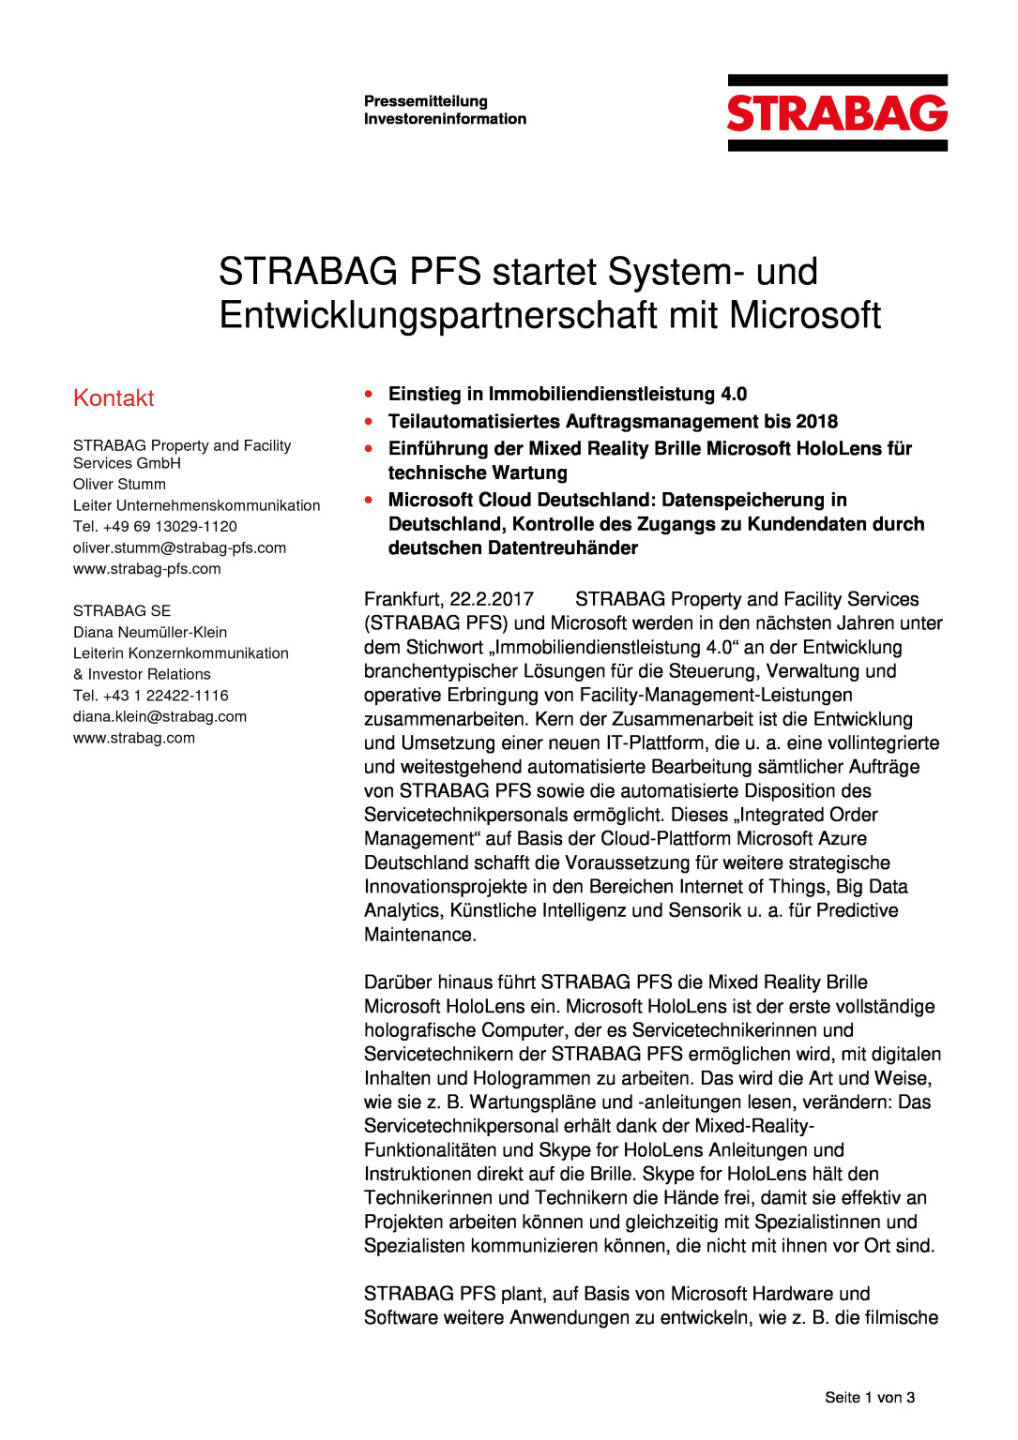 Strabag PFS startet System- und Entwicklungspartnerschaft mit Microsoft, Seite 1/3, komplettes Dokument unter http://boerse-social.com/static/uploads/file_2124_strabag_pfs_startet_system-_und_entwicklungspartnerschaft_mit_microsoft.pdf